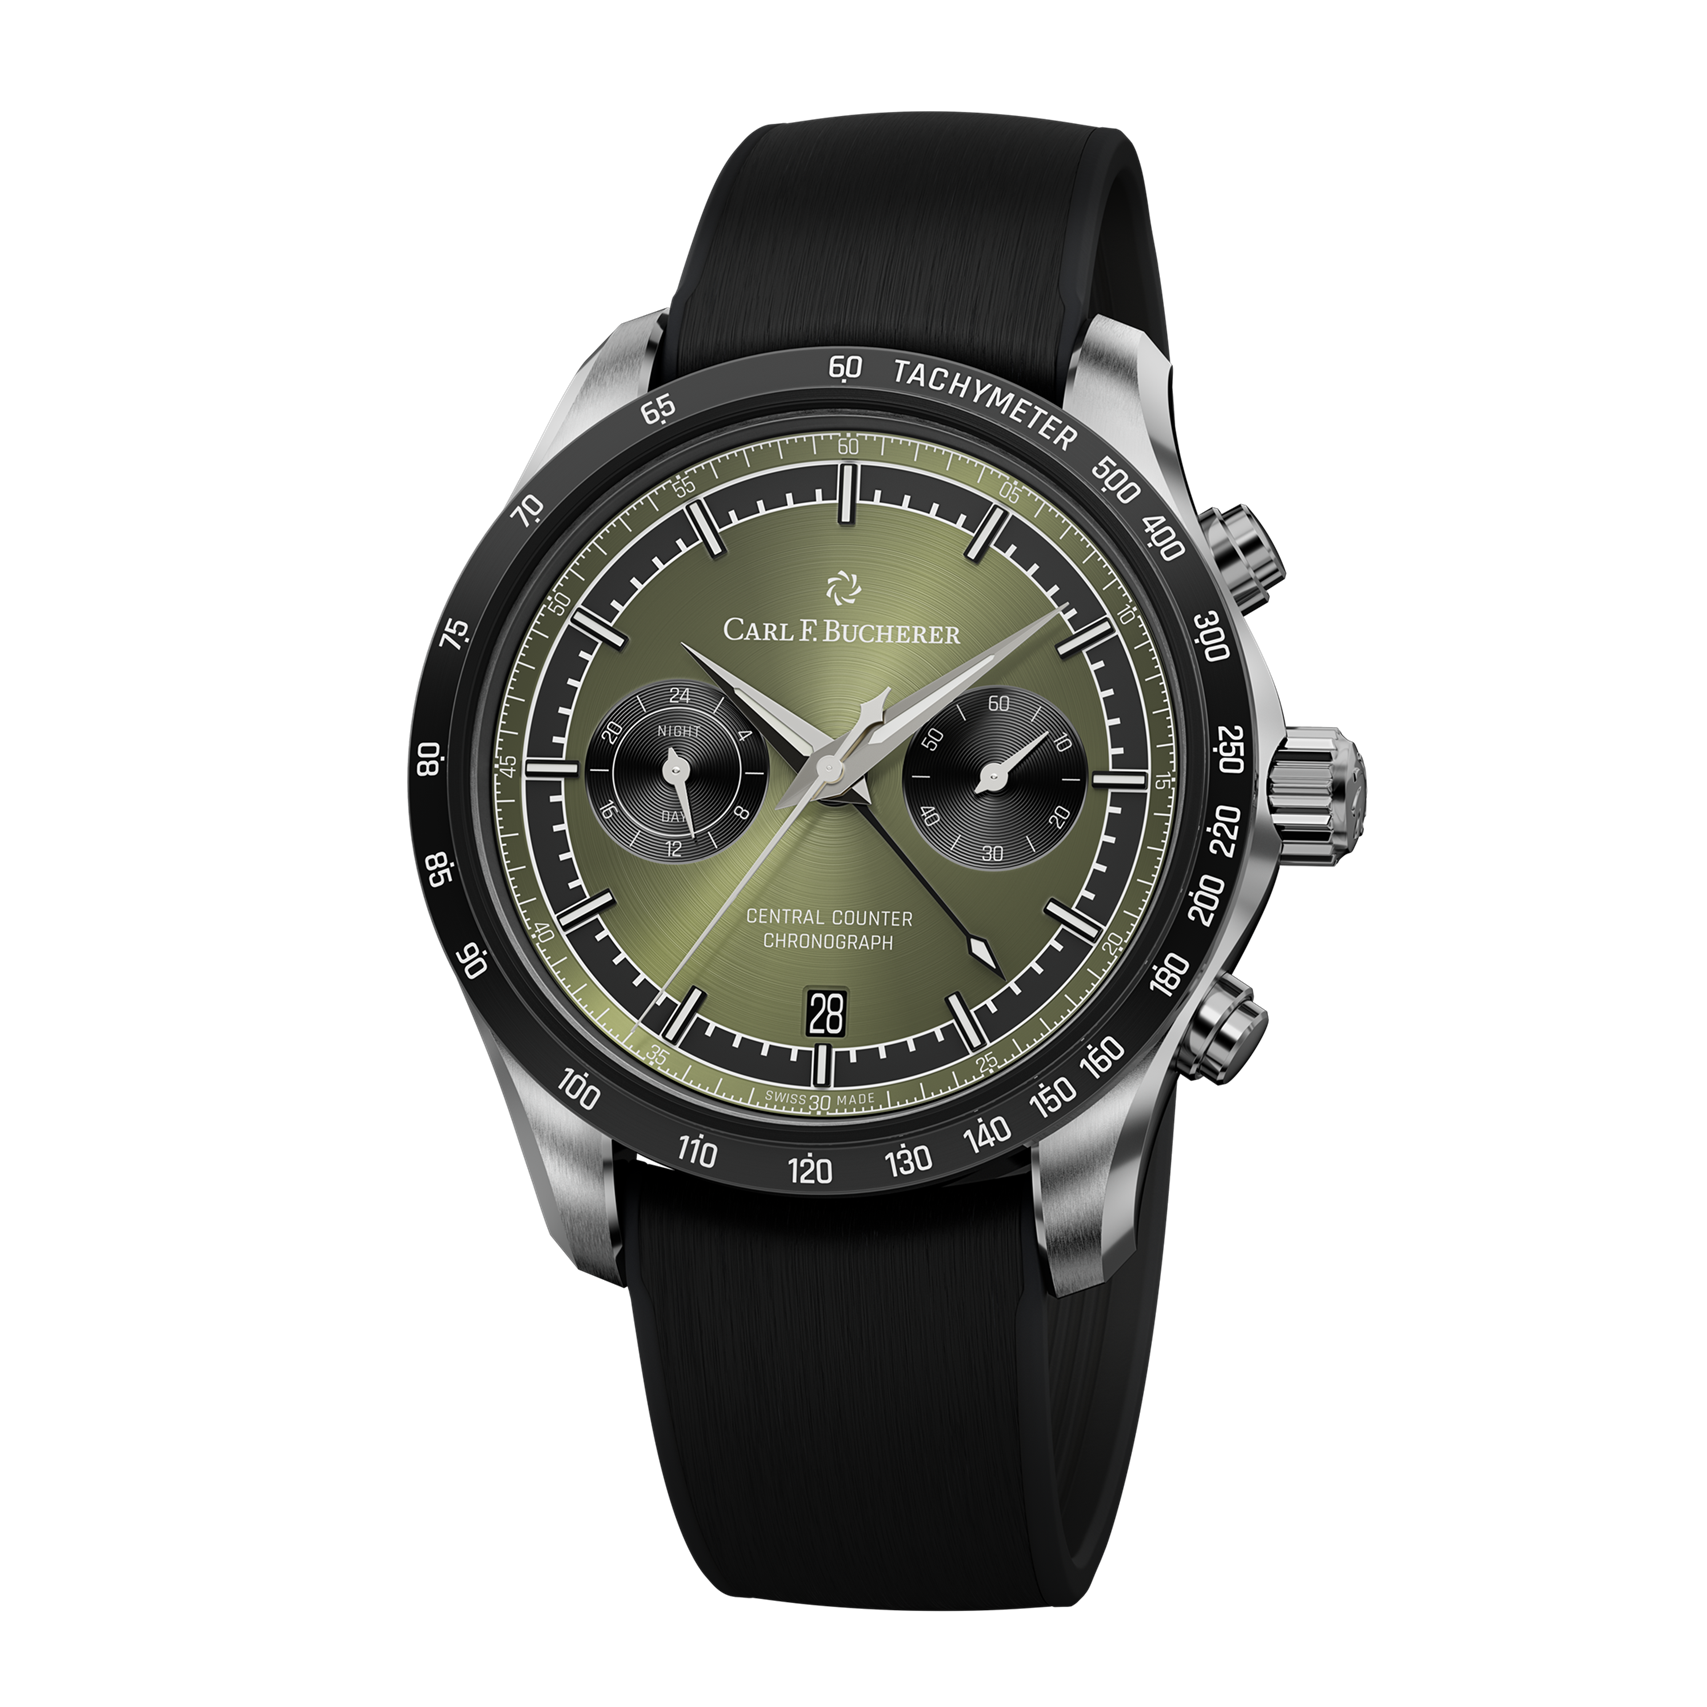 スイス時計ブランドのカール F. ブヘラより、カラーダイヤルが